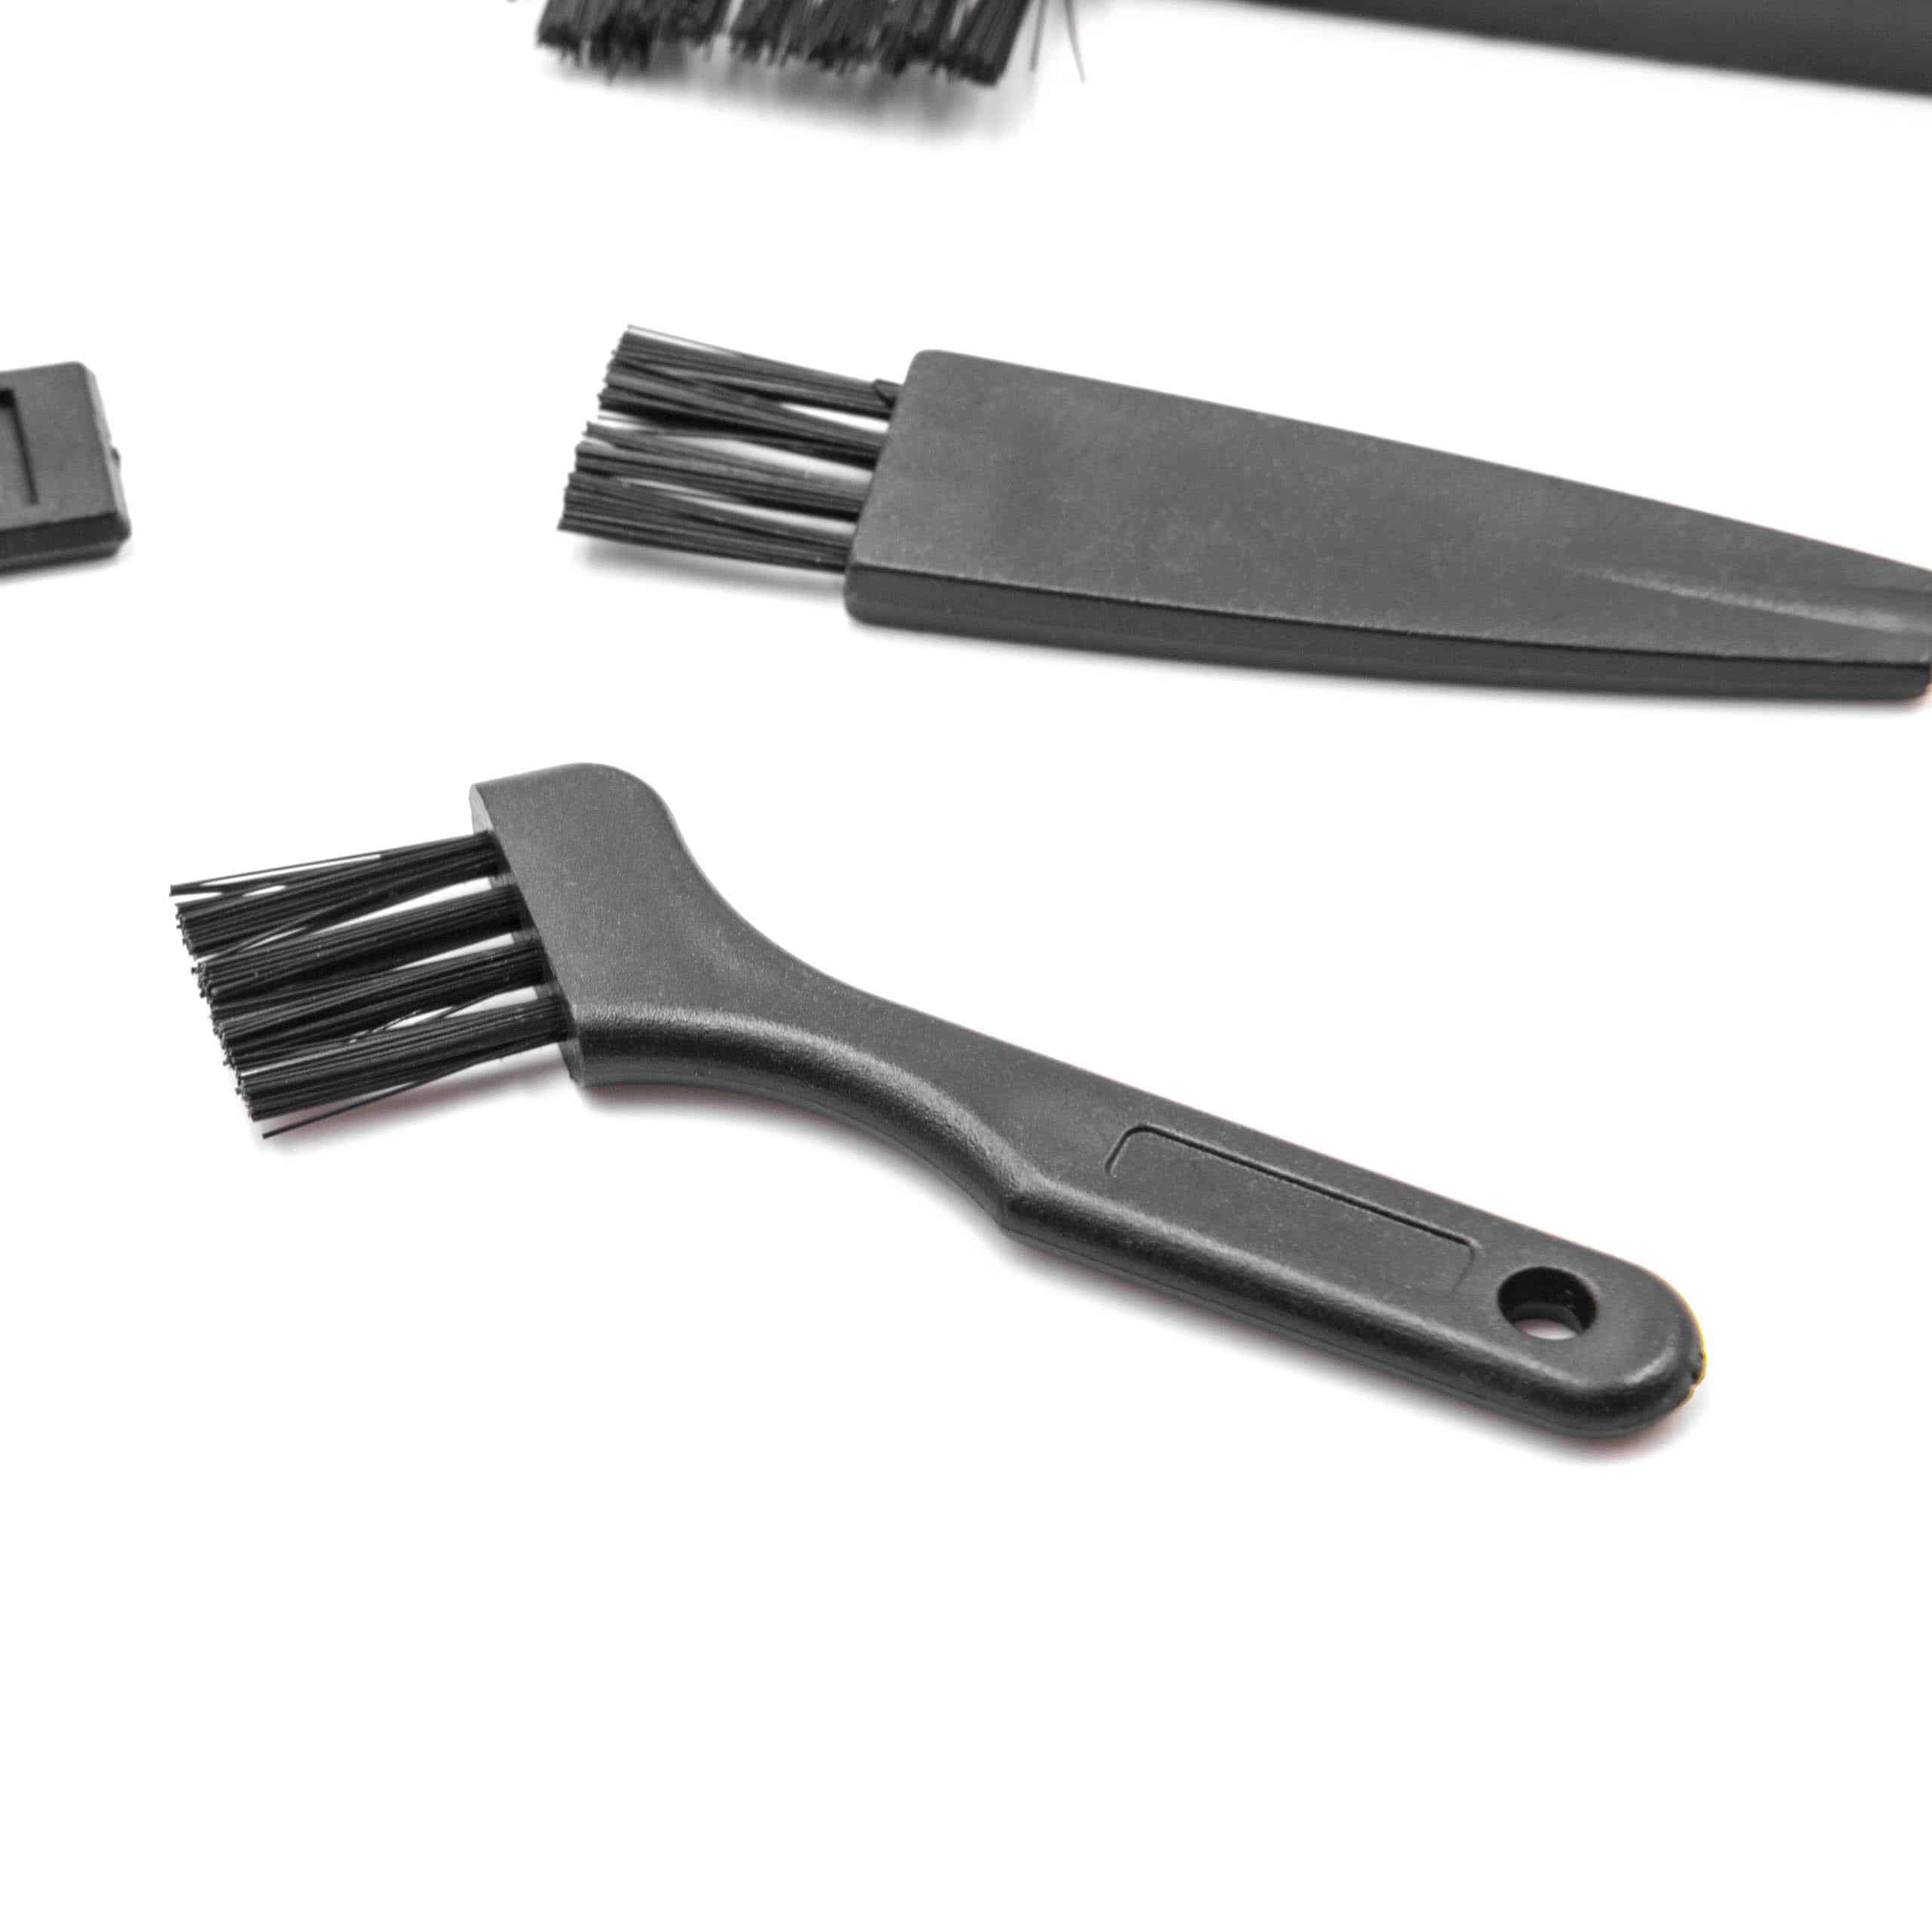 9x Cepillo limpieza para afeitadoras eléctricas, máquinas afeitar, cortapelos